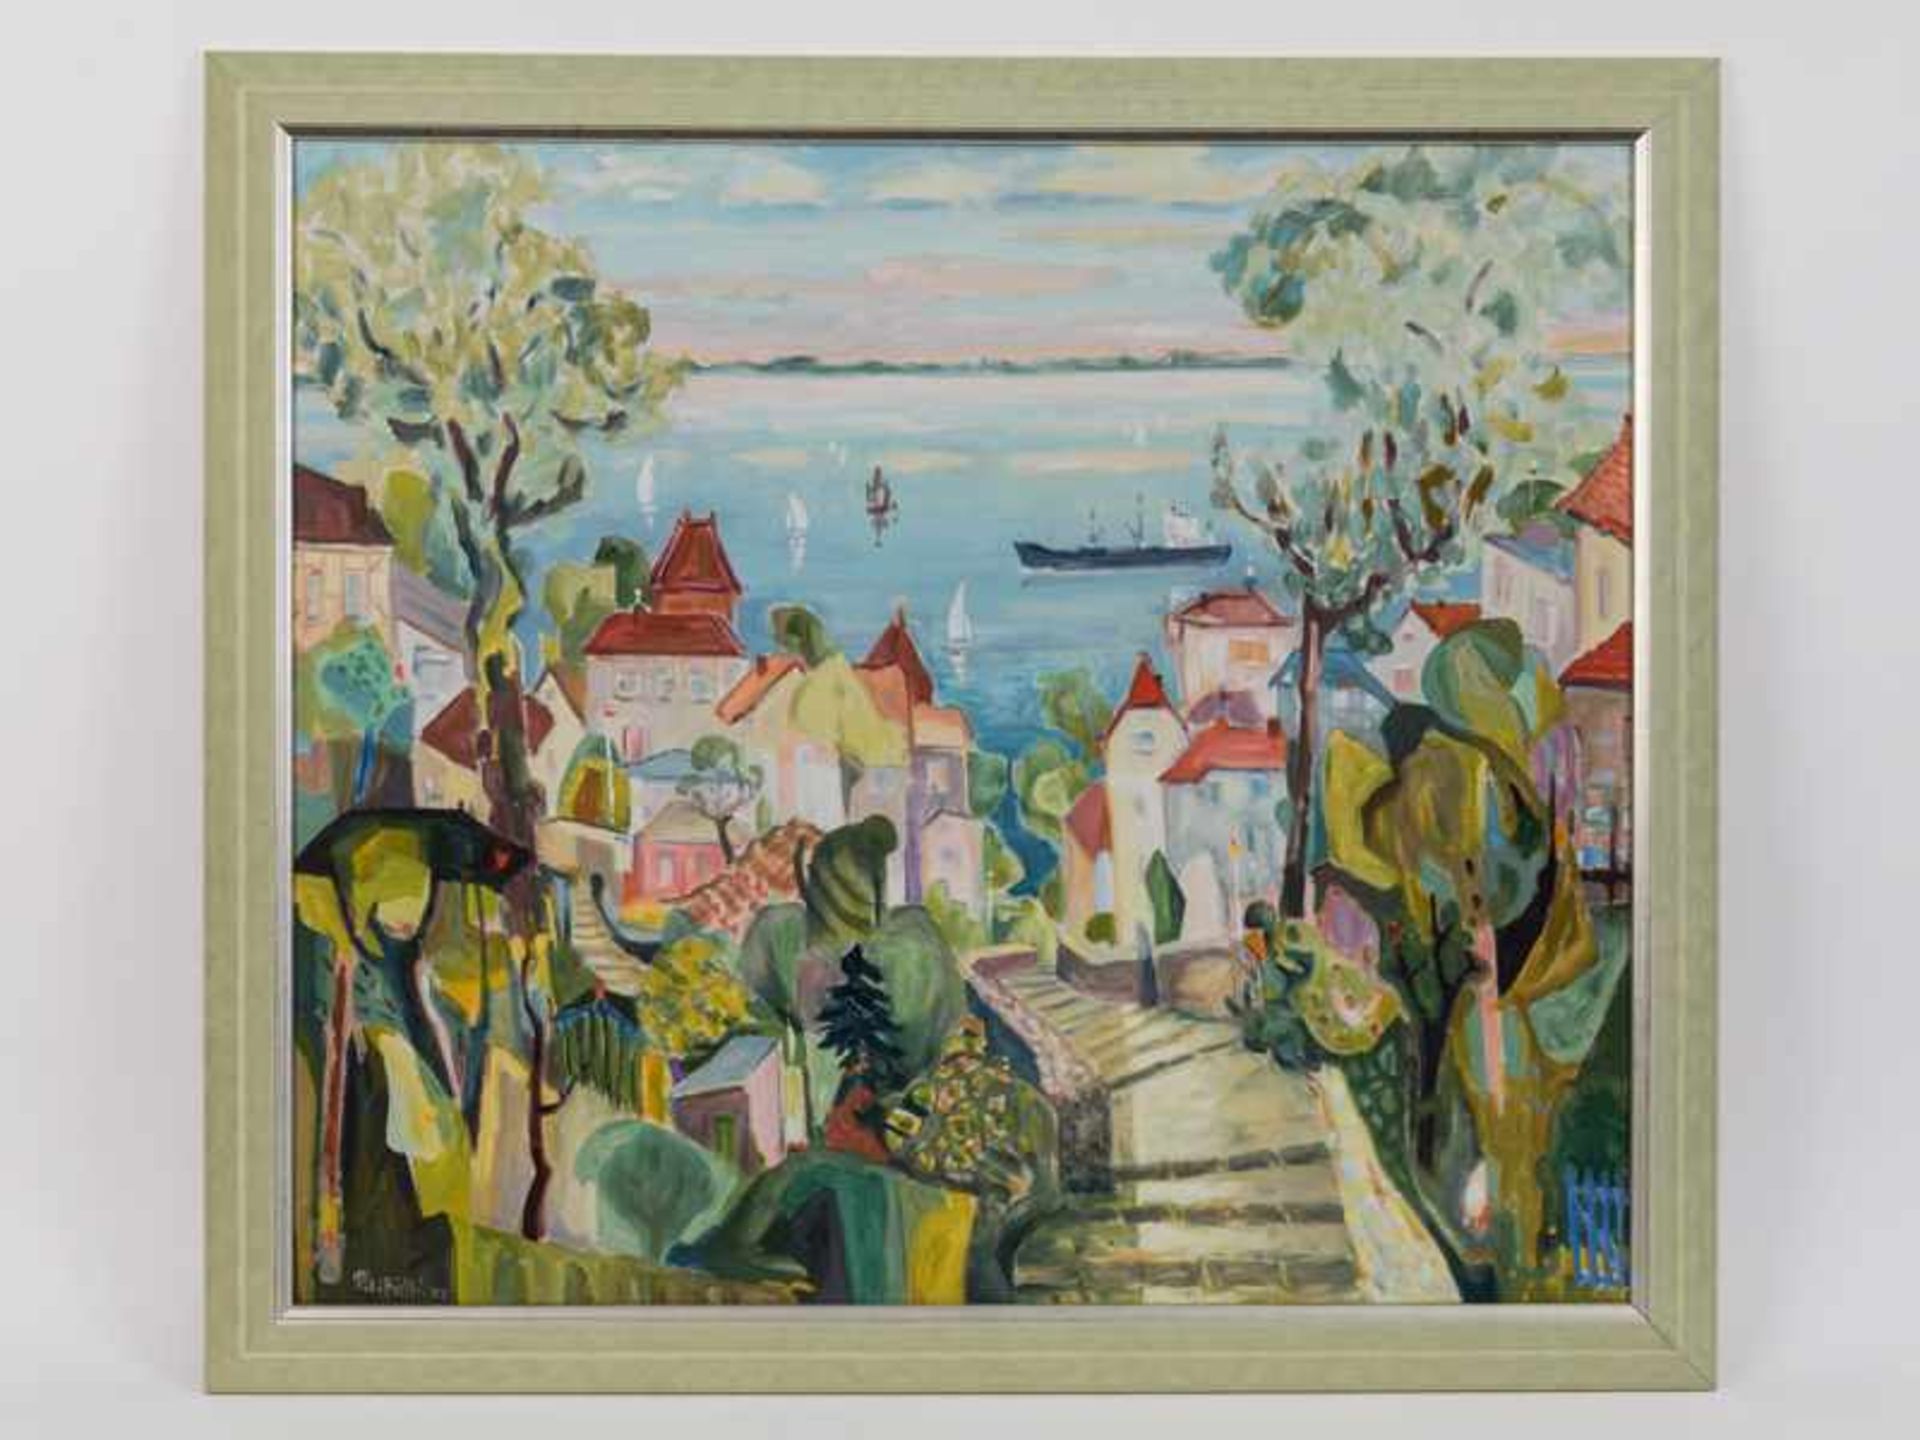 von Frihling, Pit (1919 - 2011). Öl auf Leinwand; "Blankenese", 2001; in hellen pastelligen